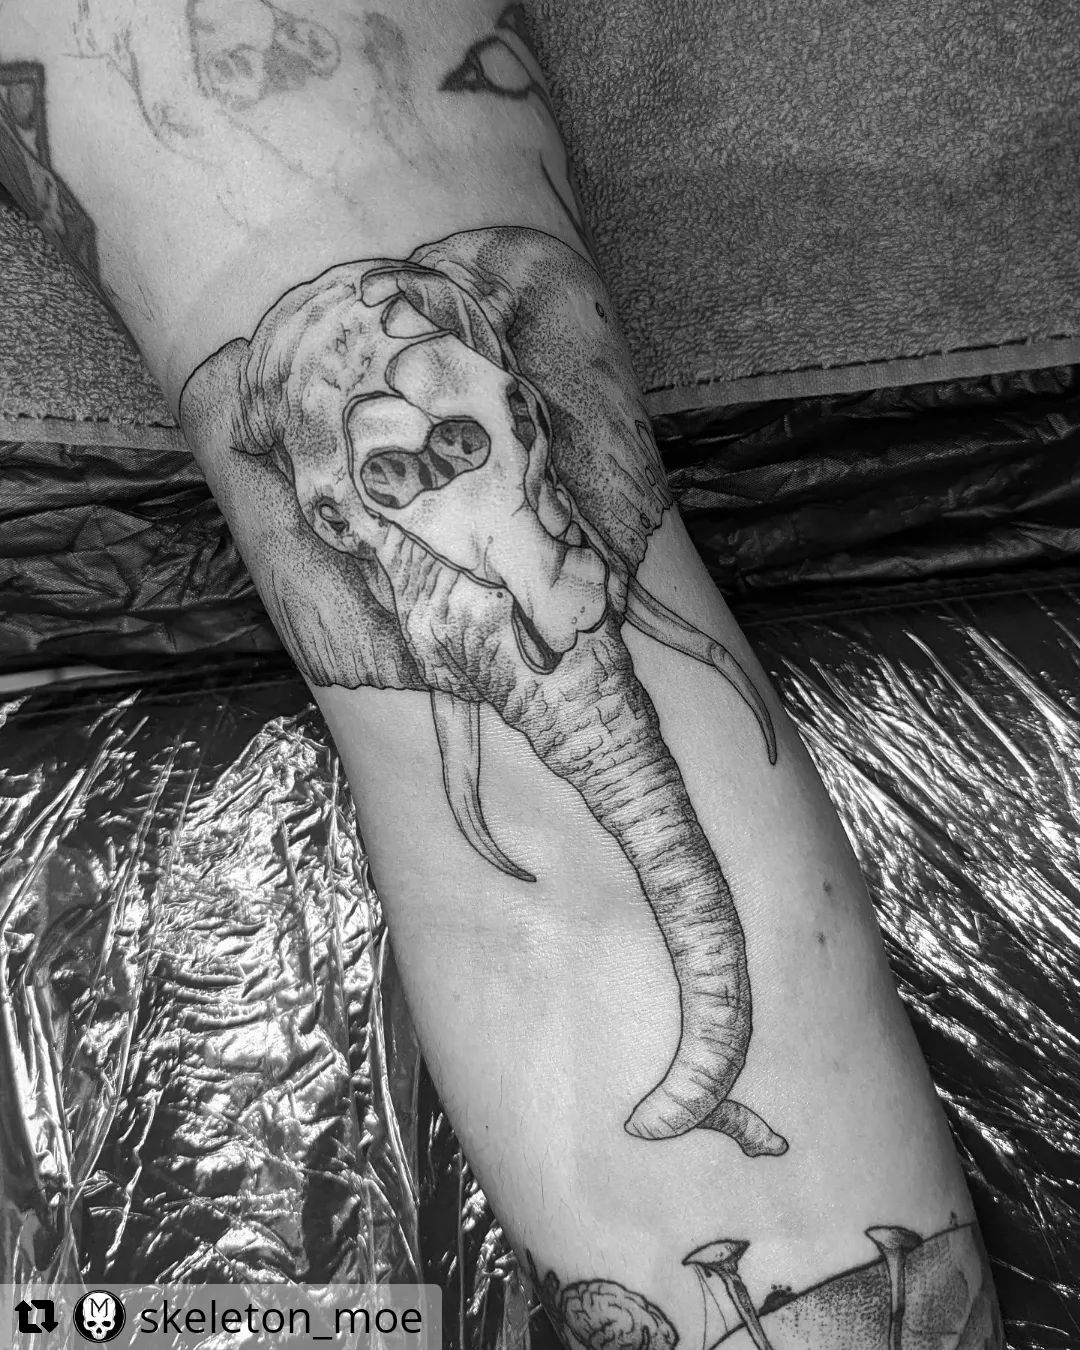 Elefant von @skeleton_moe
• • • • • •
Dead Elephant
.
#tattooartist #tattoodesig